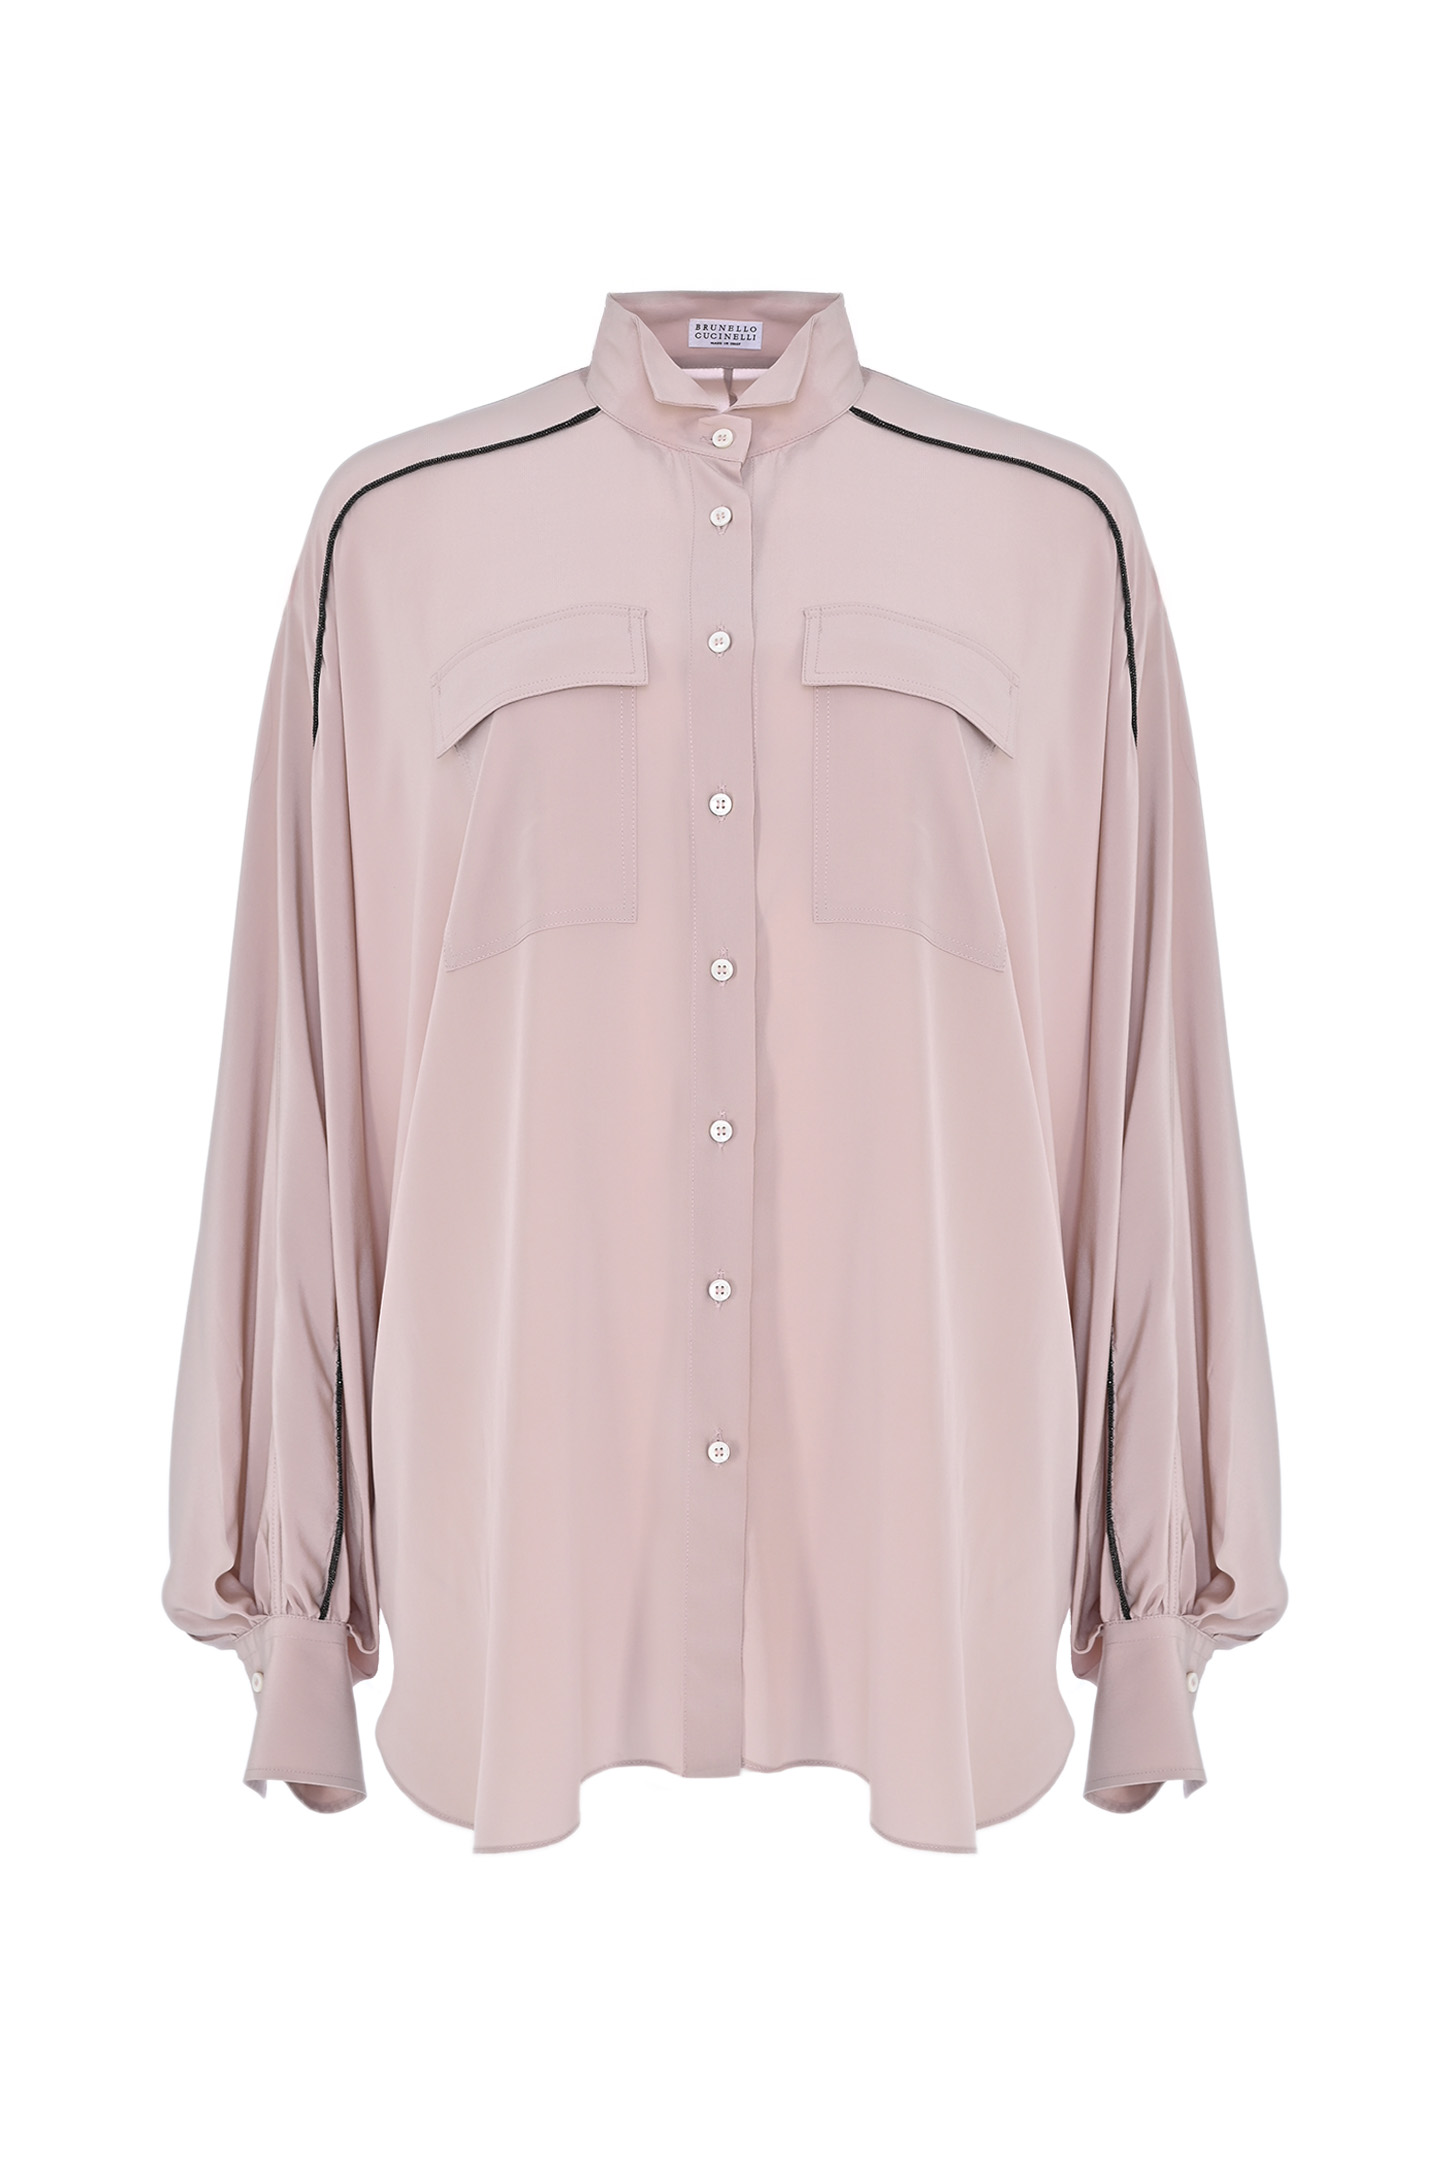 Блуза BRUNELLO  CUCINELLI MB993MK716, цвет: Персиковый, Женский